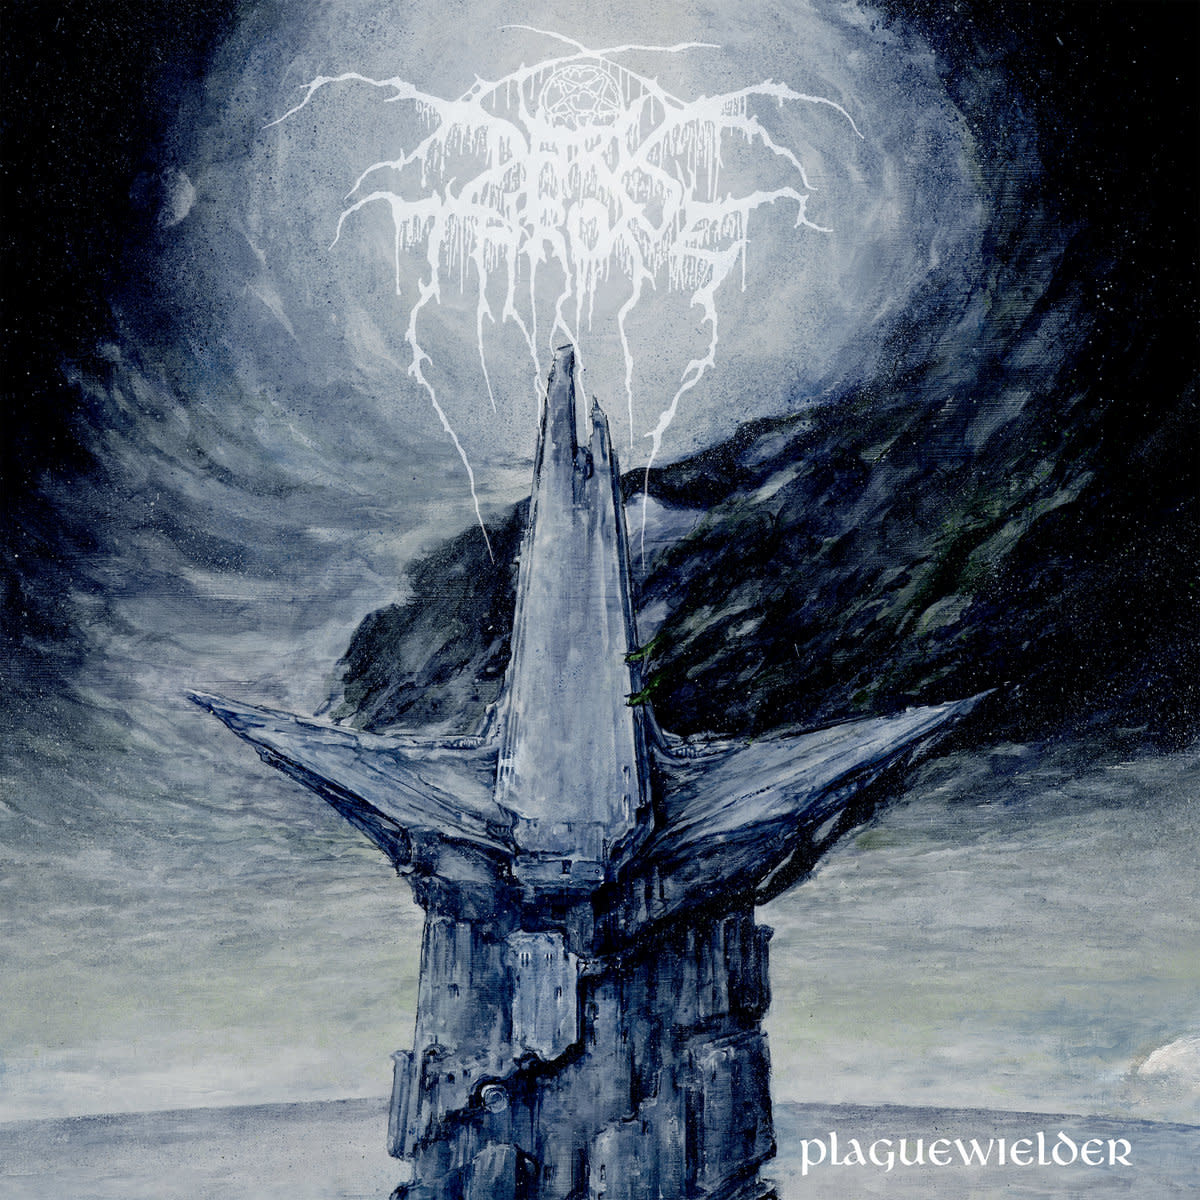 Metal Darkthrone - Plaguewielder